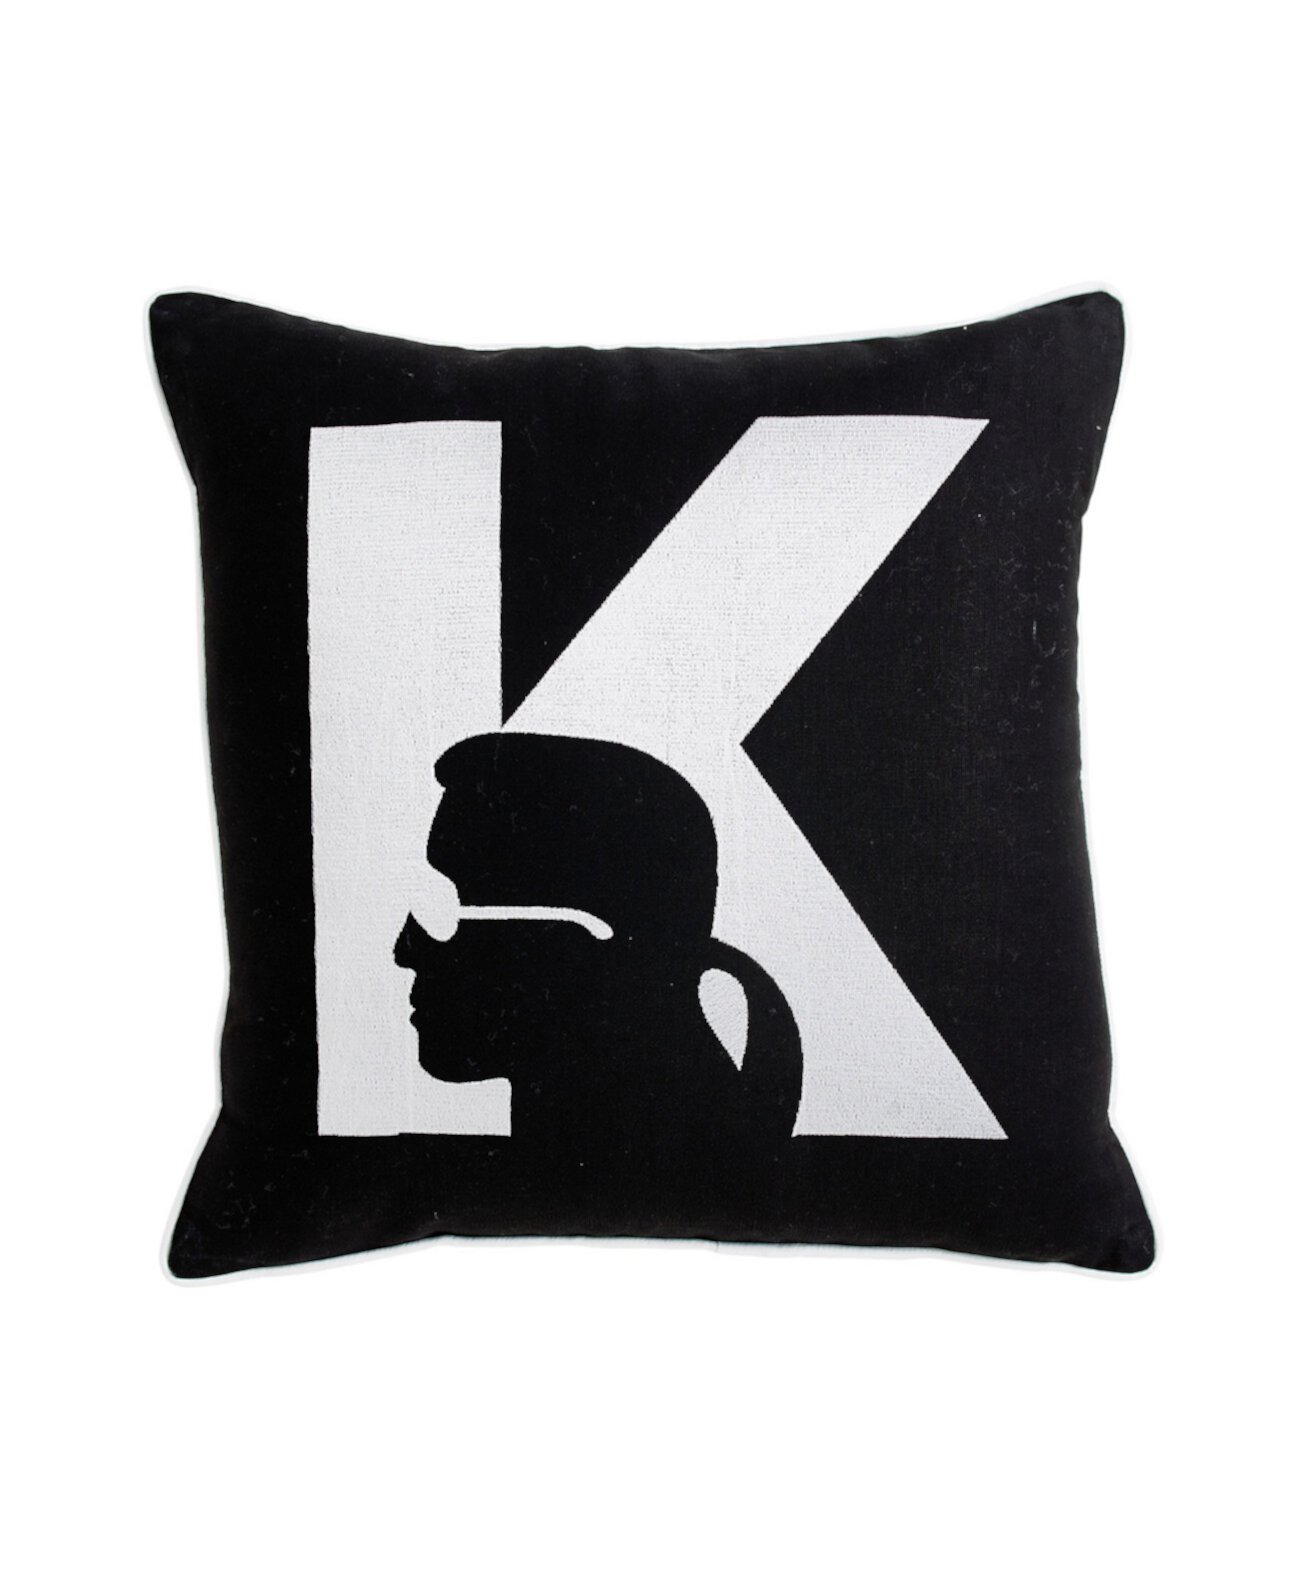 Декоративная подушка Silhouette, 18 x 18 дюймов Karl Lagerfeld Paris